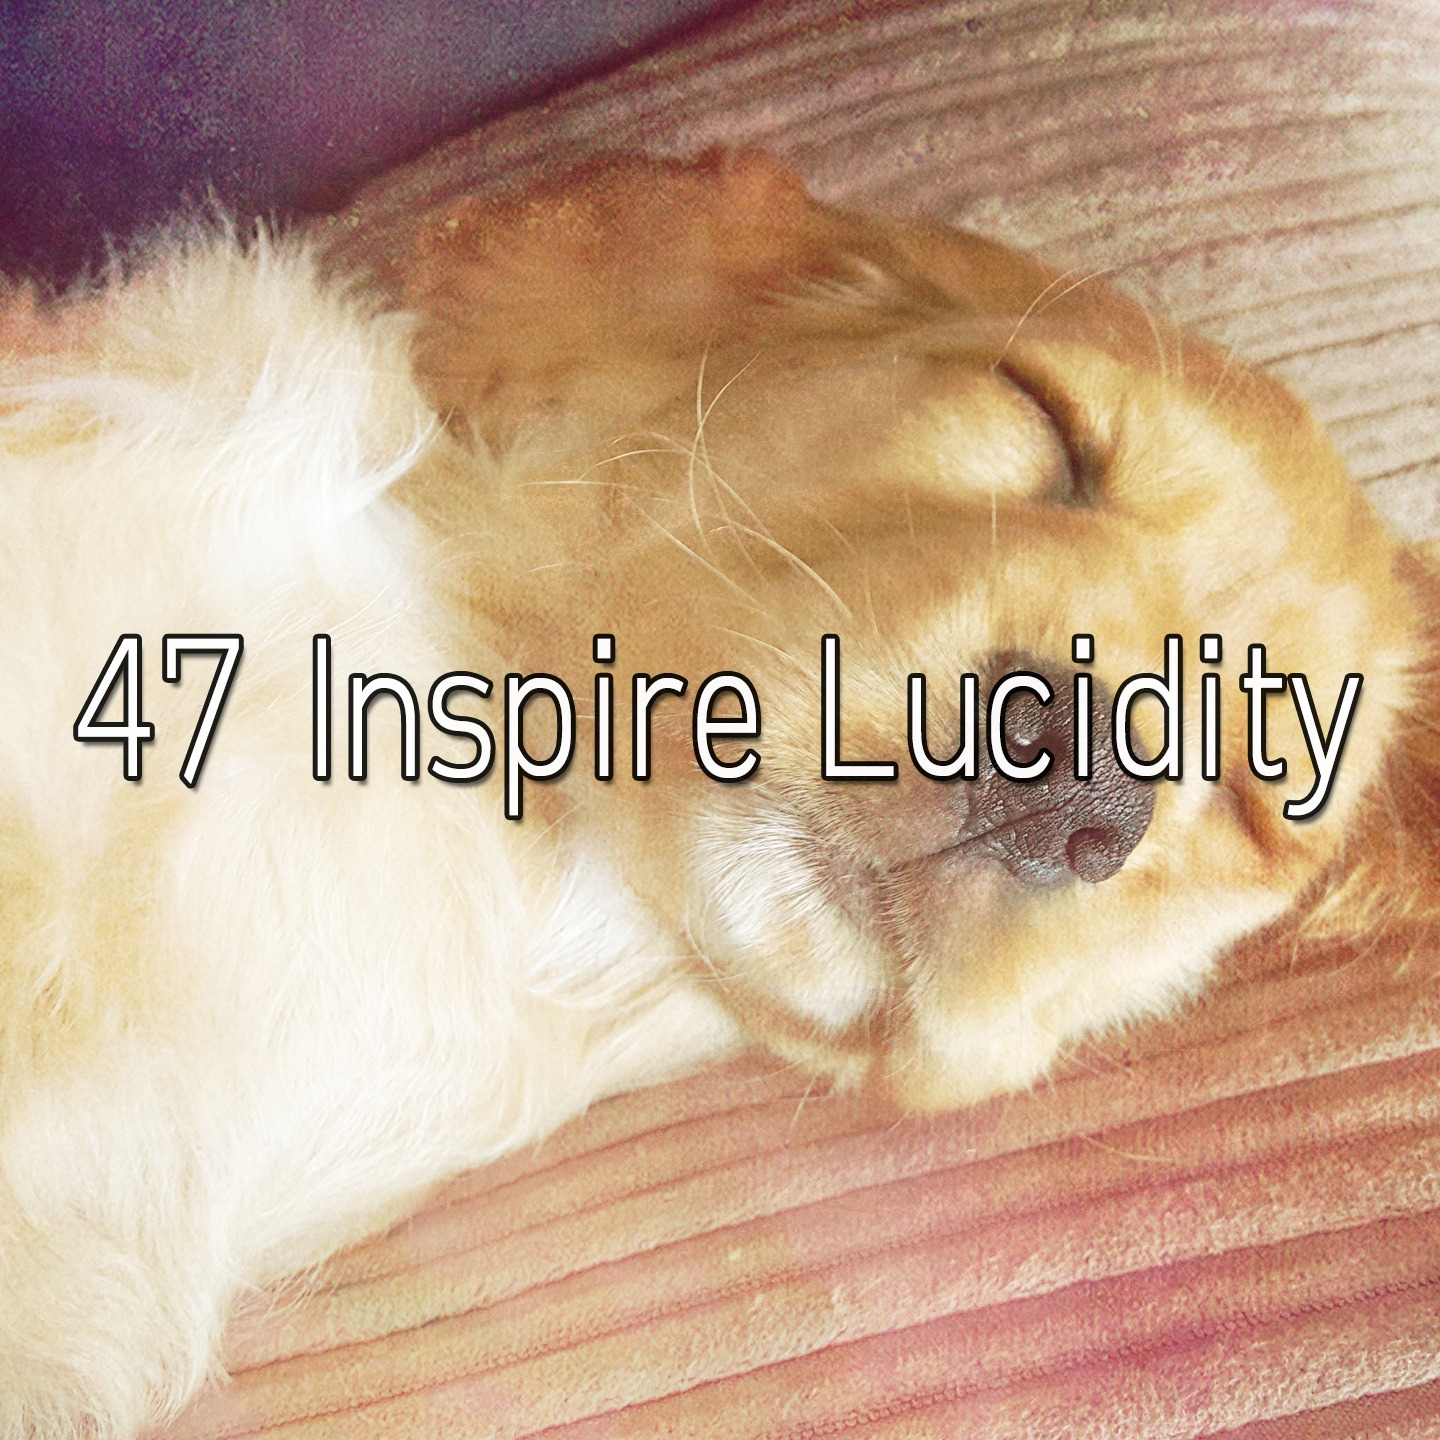 47 Inspire Lucidity